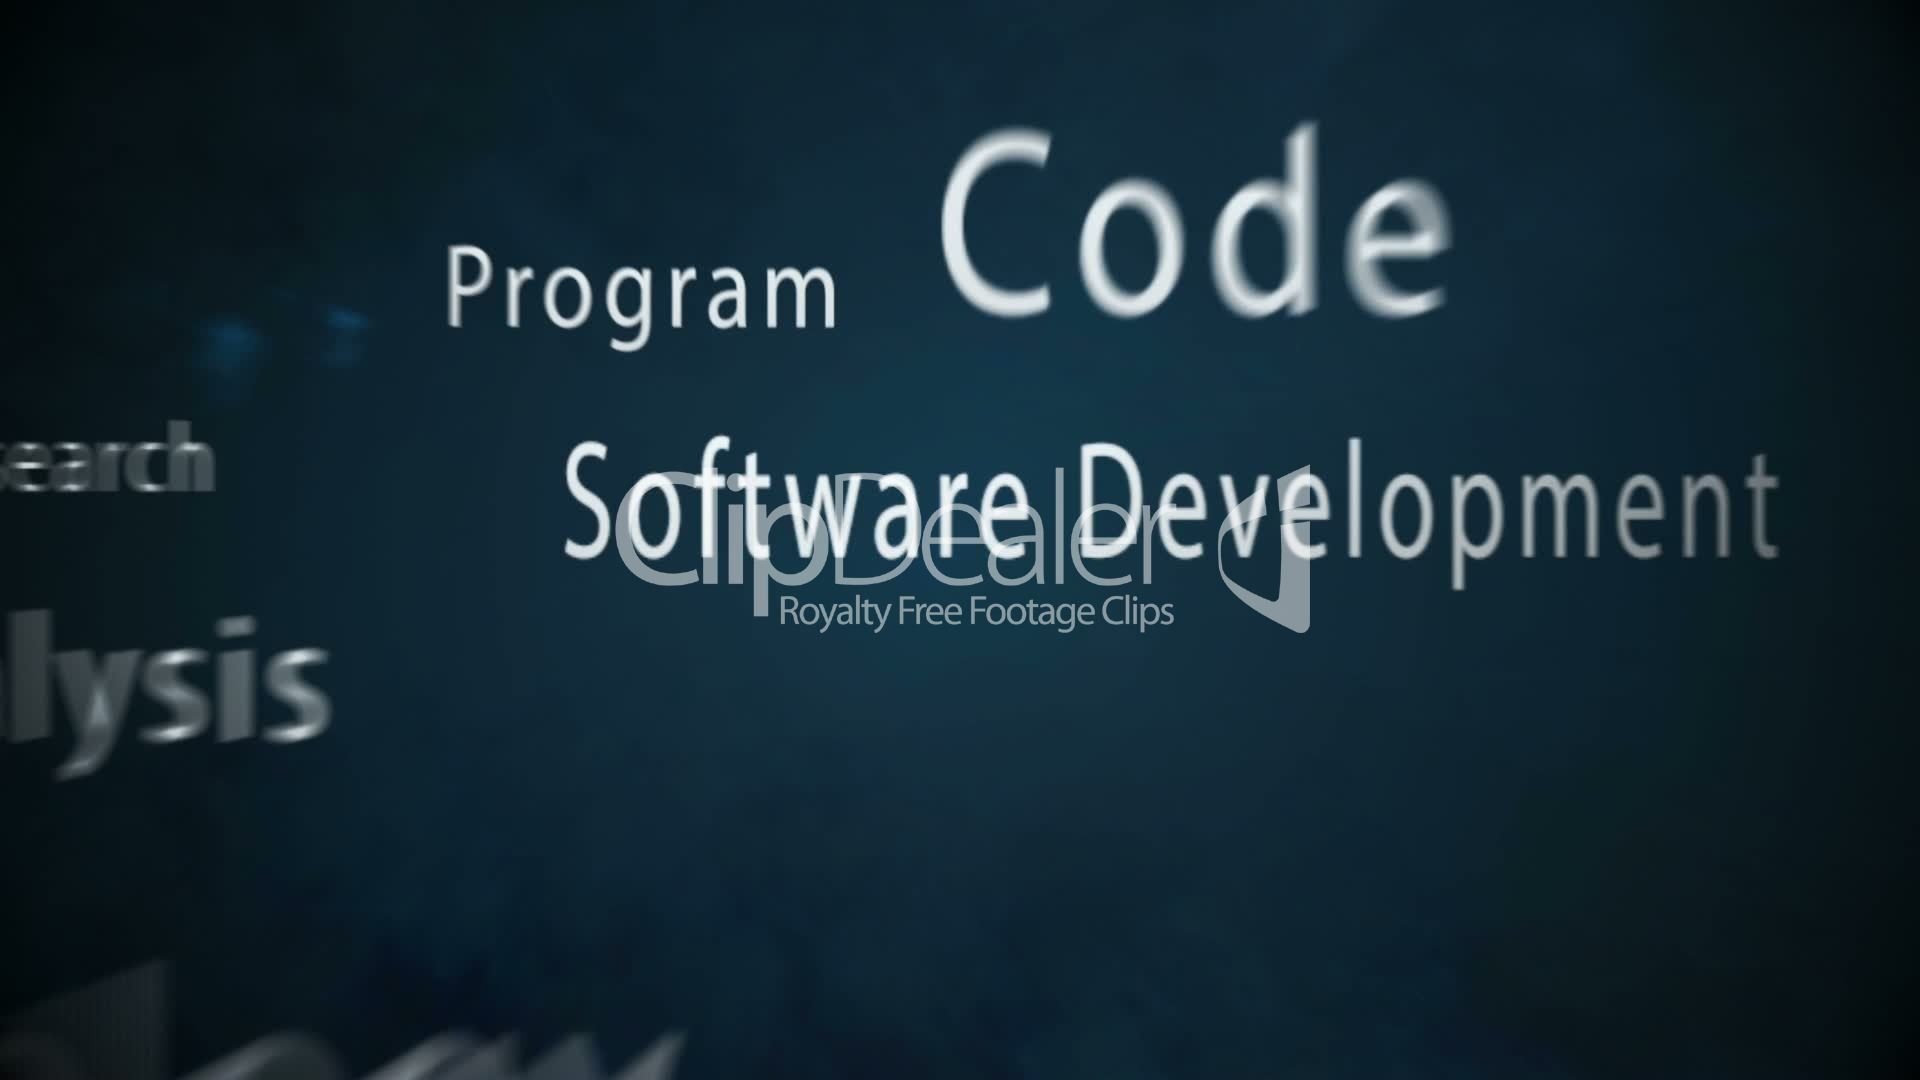 Software Development Wallpaper. Software Wallpaper, Software Engineering Wallpaper and Software Development Wallpaper